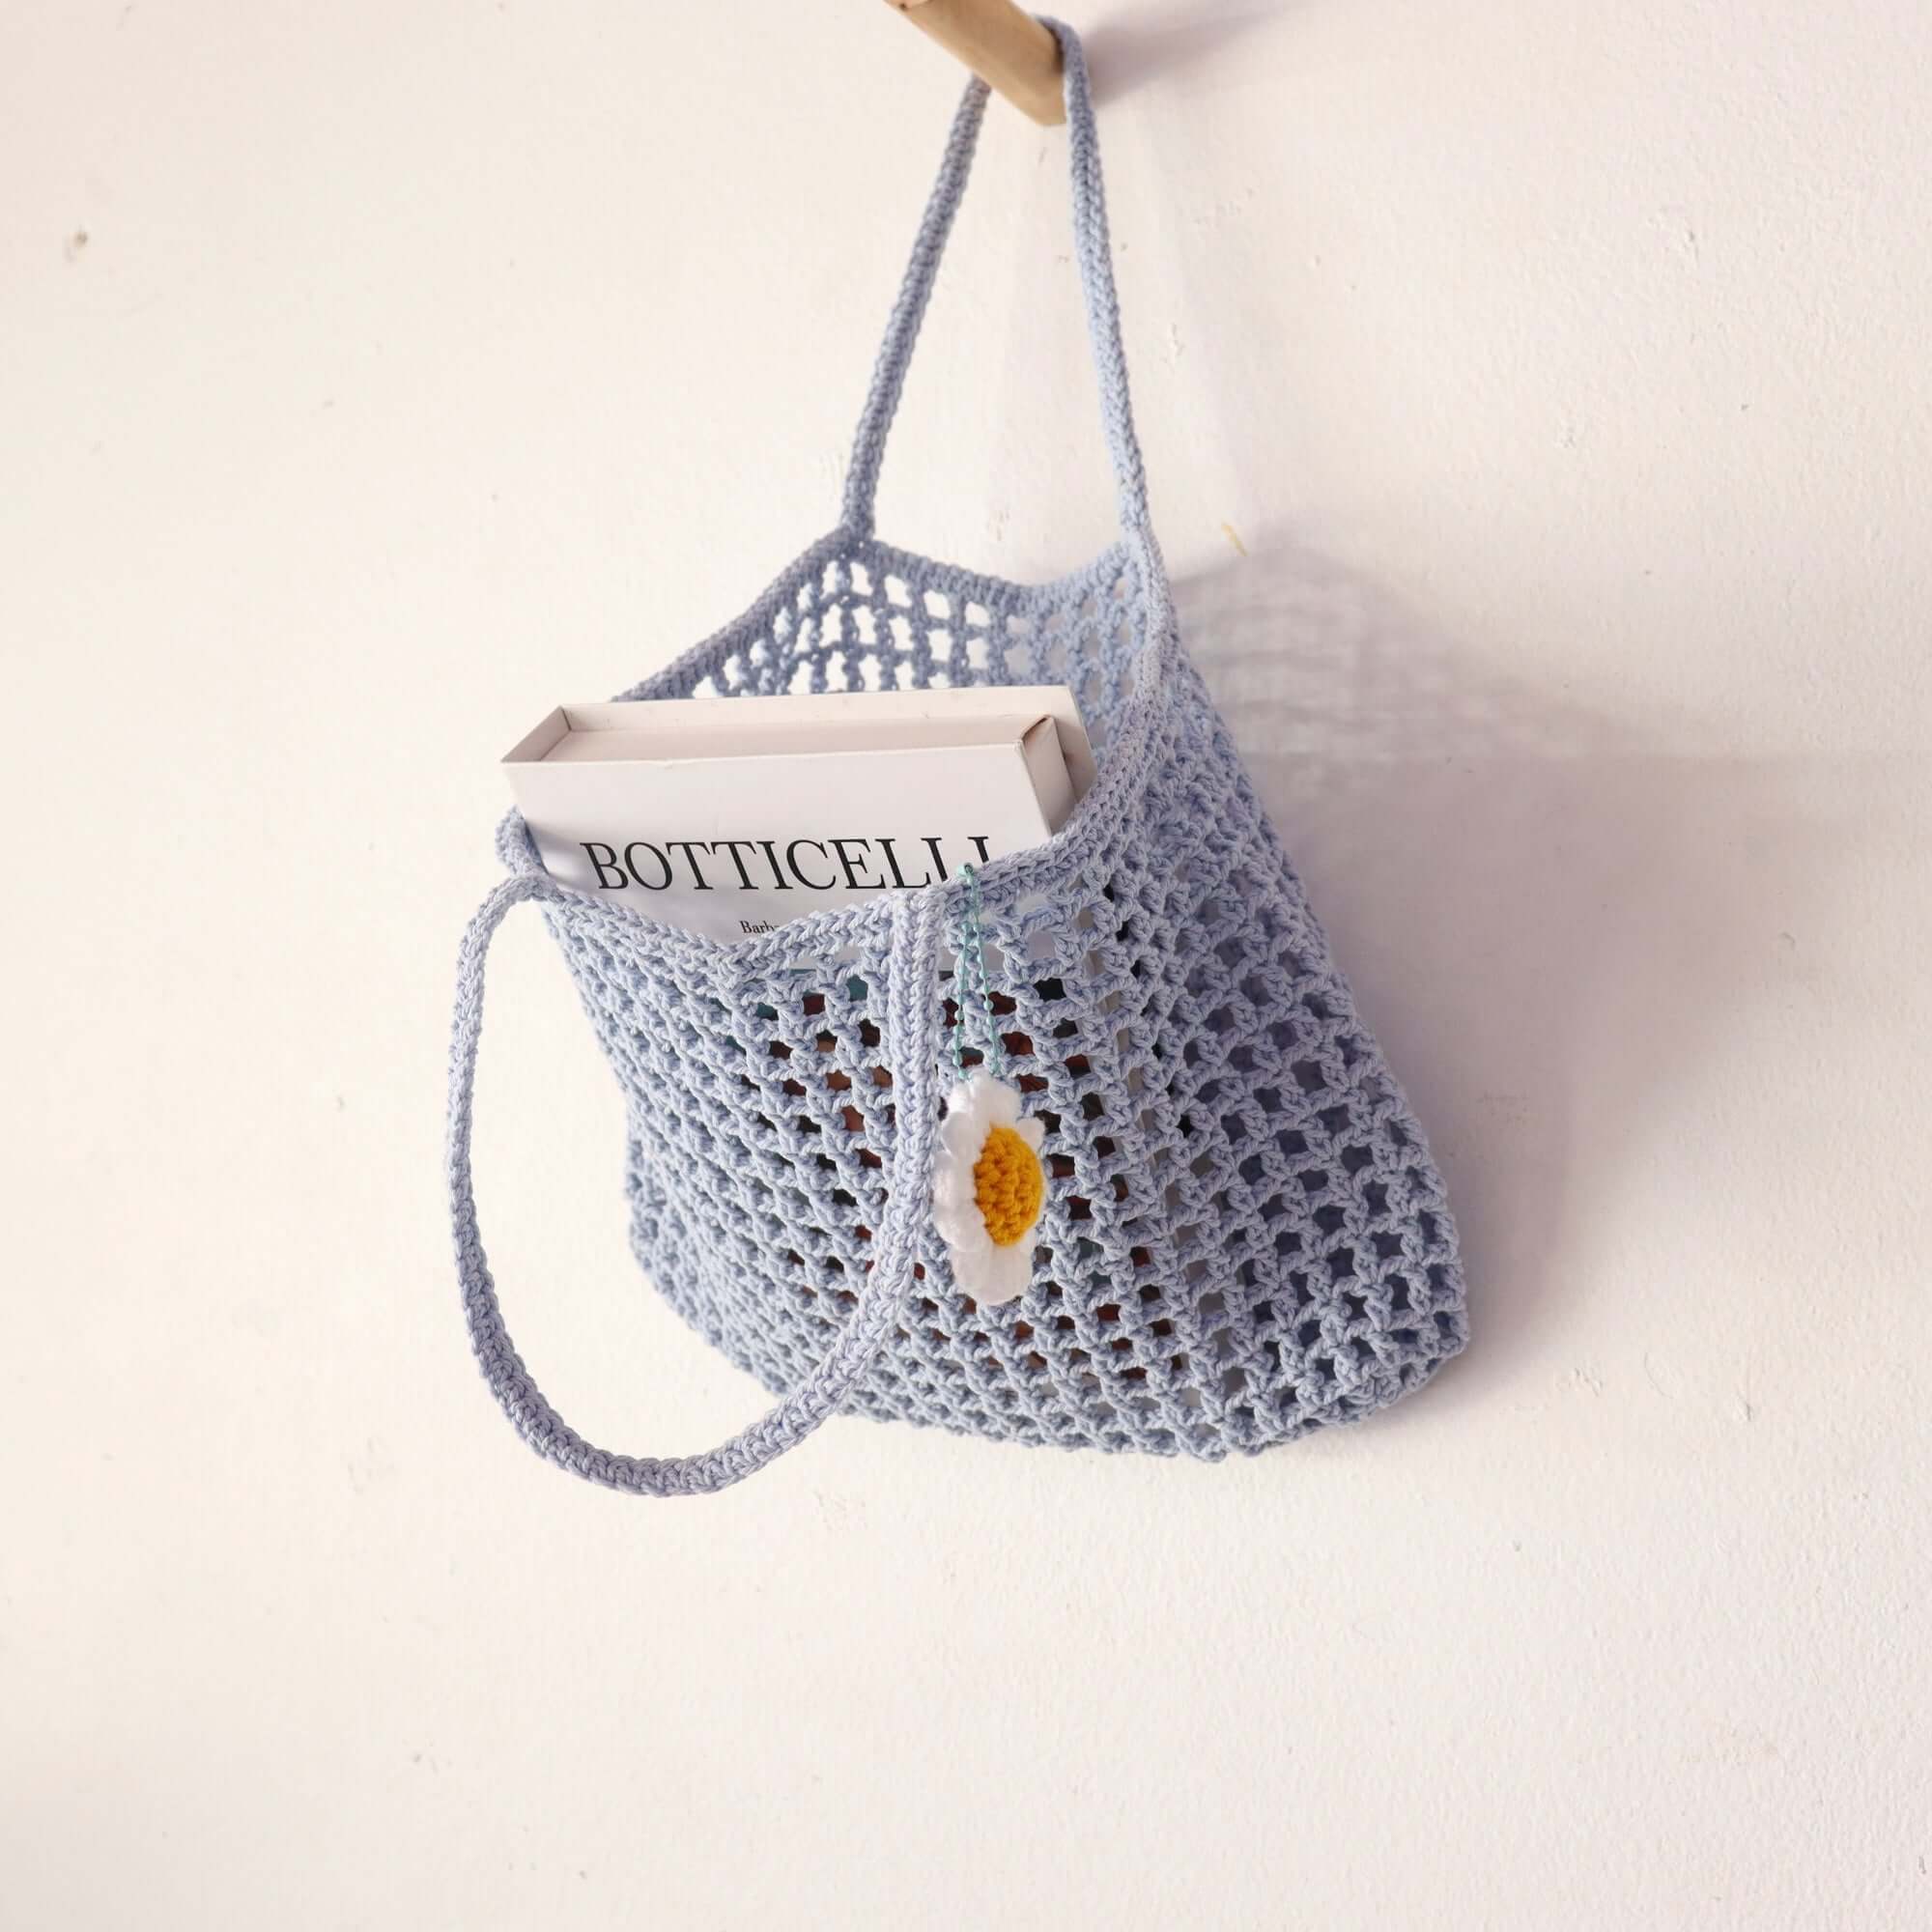 Light Blue - Crochet bag